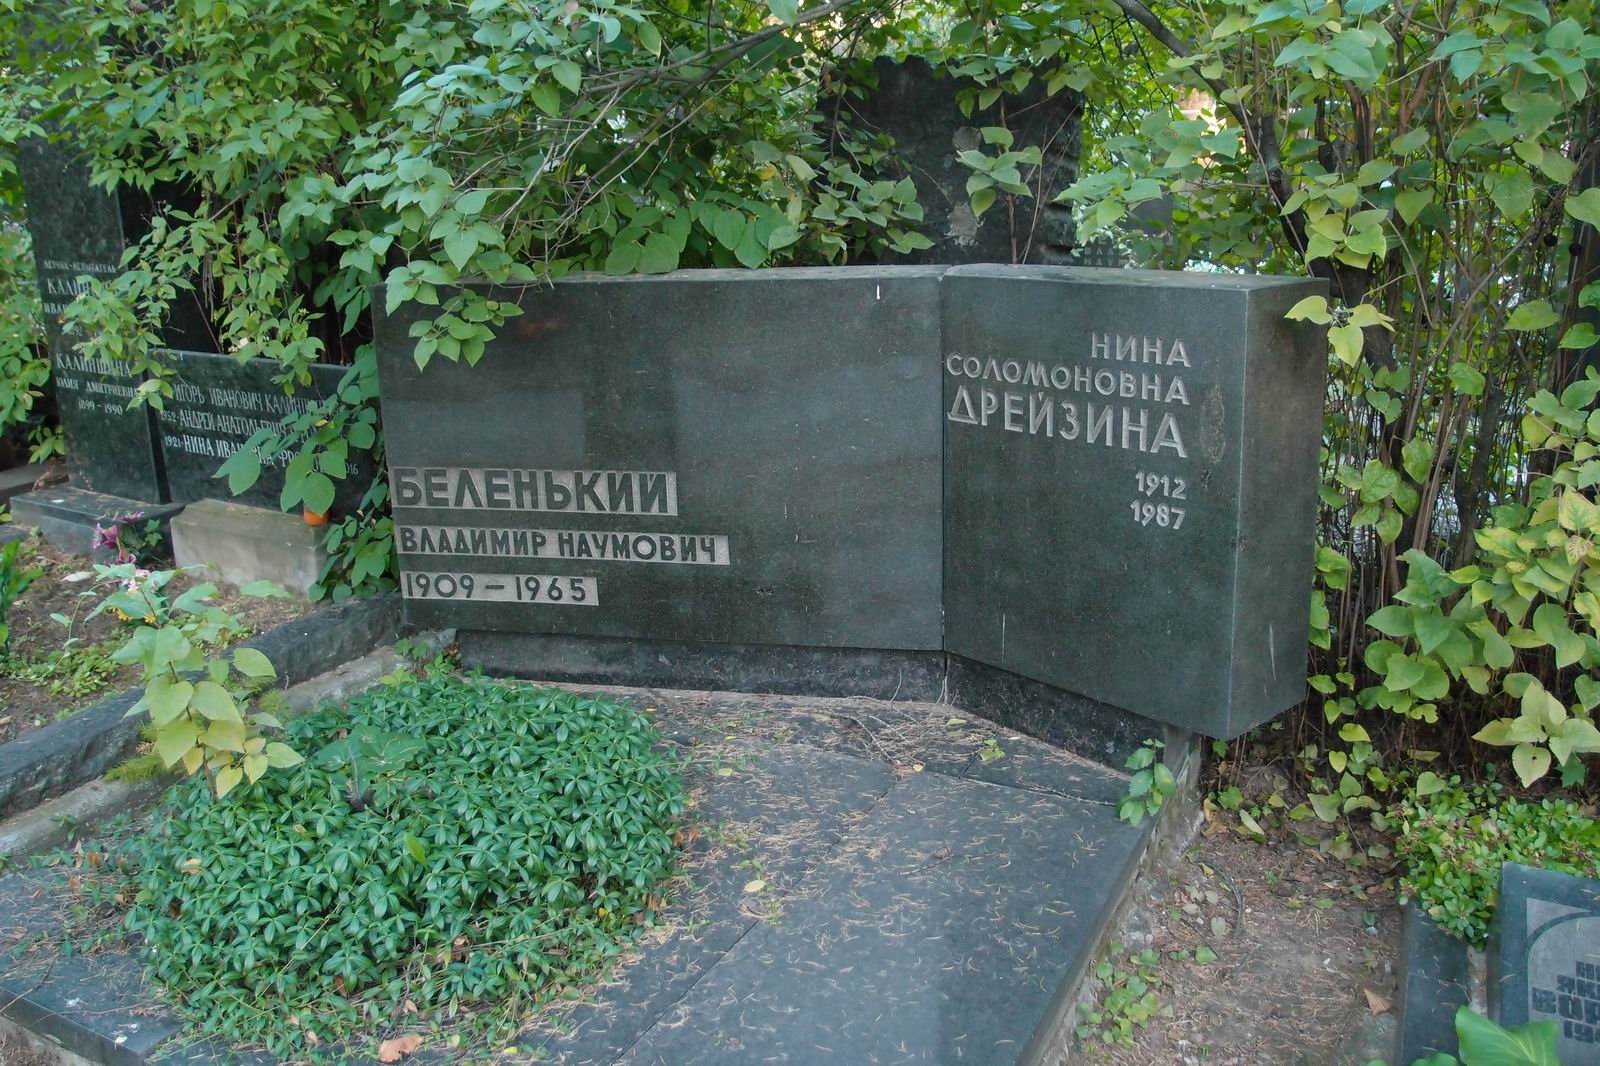 Памятник на могиле Беленького В.Н. (1909-1965), на Новодевичьем кладбище (6-16-10).